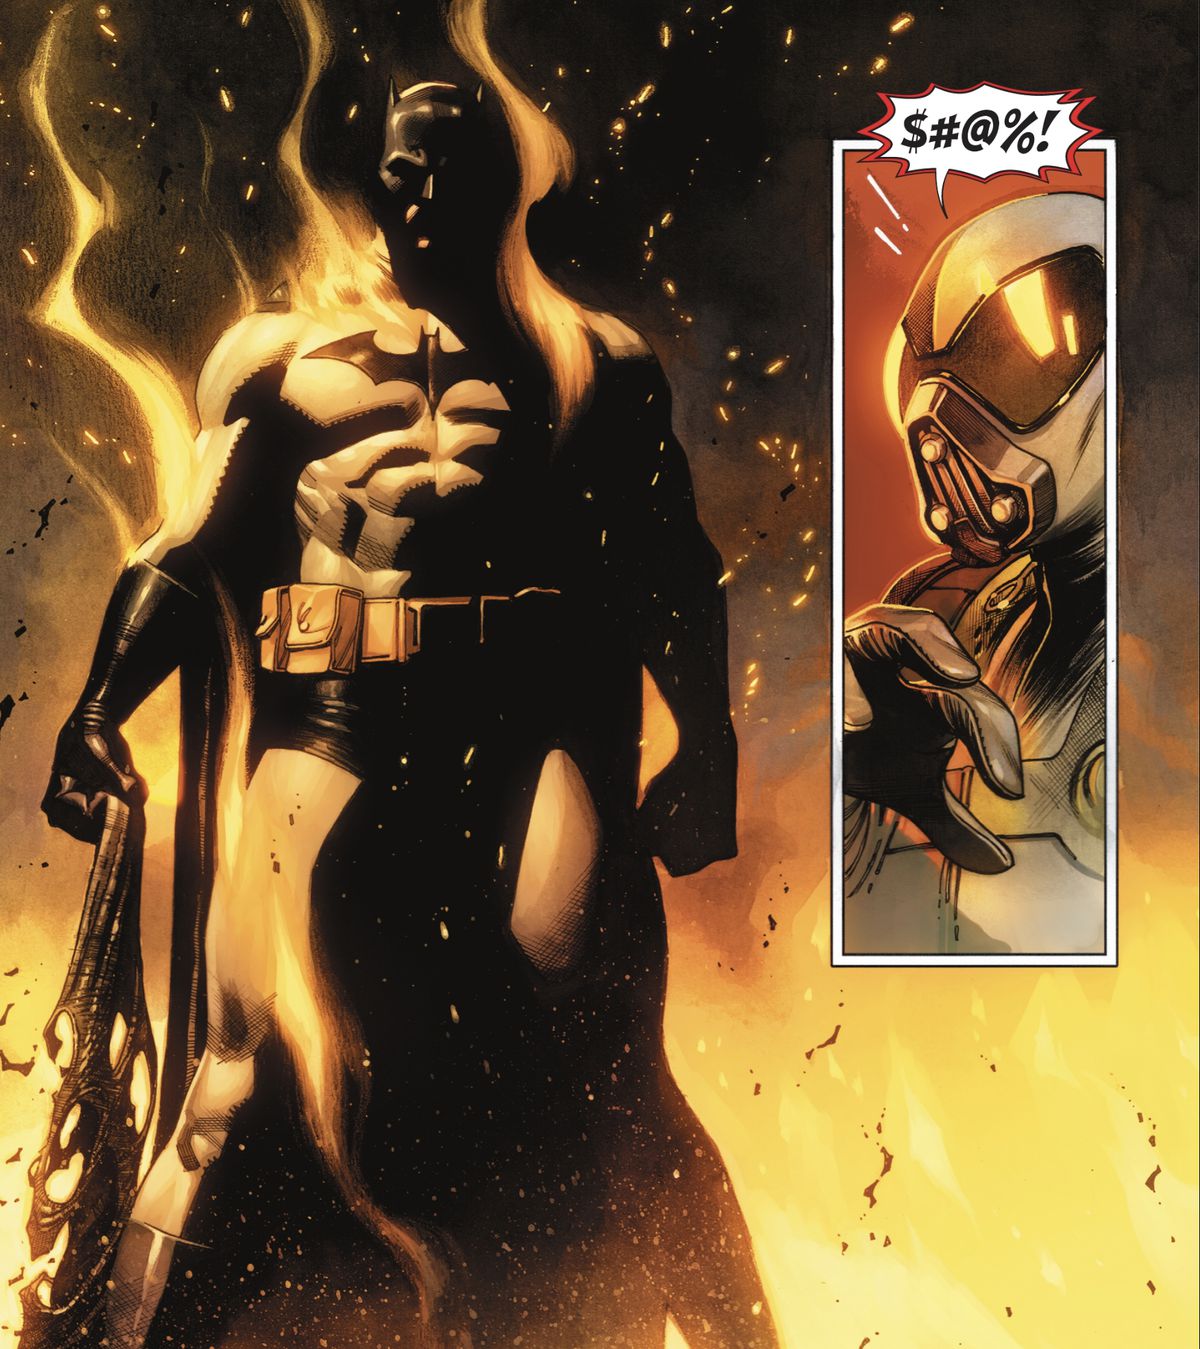 Batman si erge minaccioso e illeso nel mezzo di un incendio.  “$#@%!”  esclama Firefly in Batman #118 (2021).